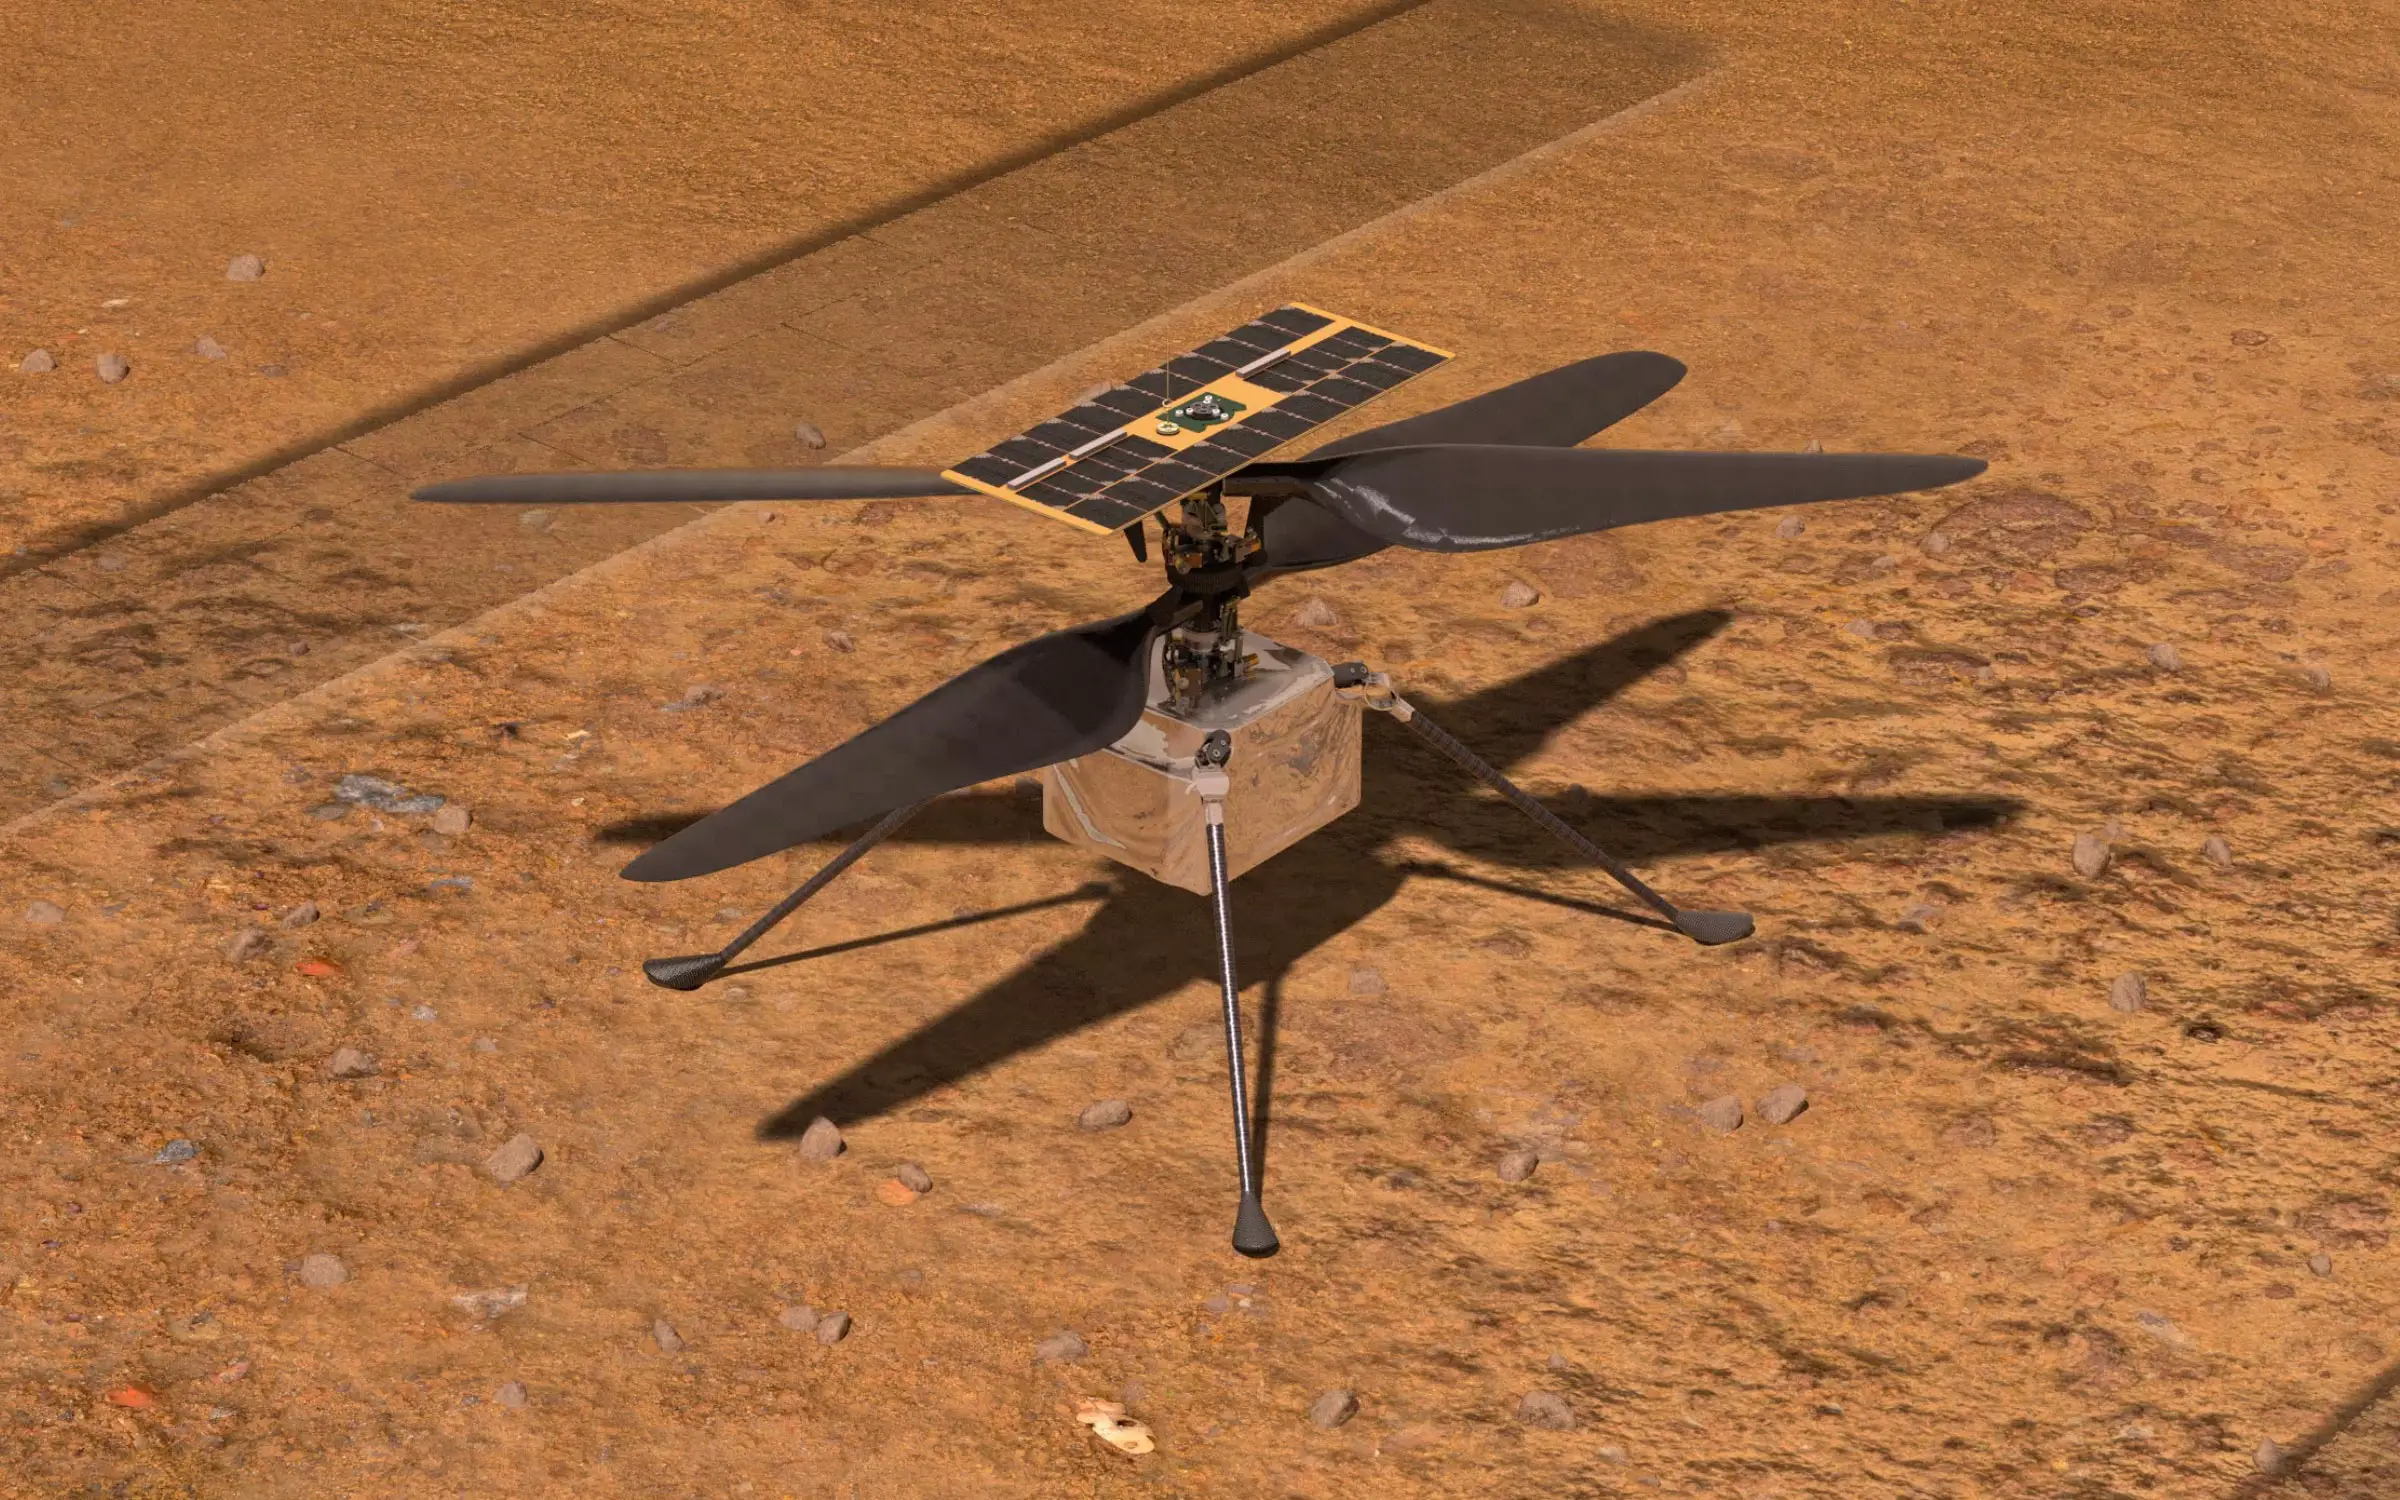 Drone Nasa Ingenuity riprende le comunicazioni